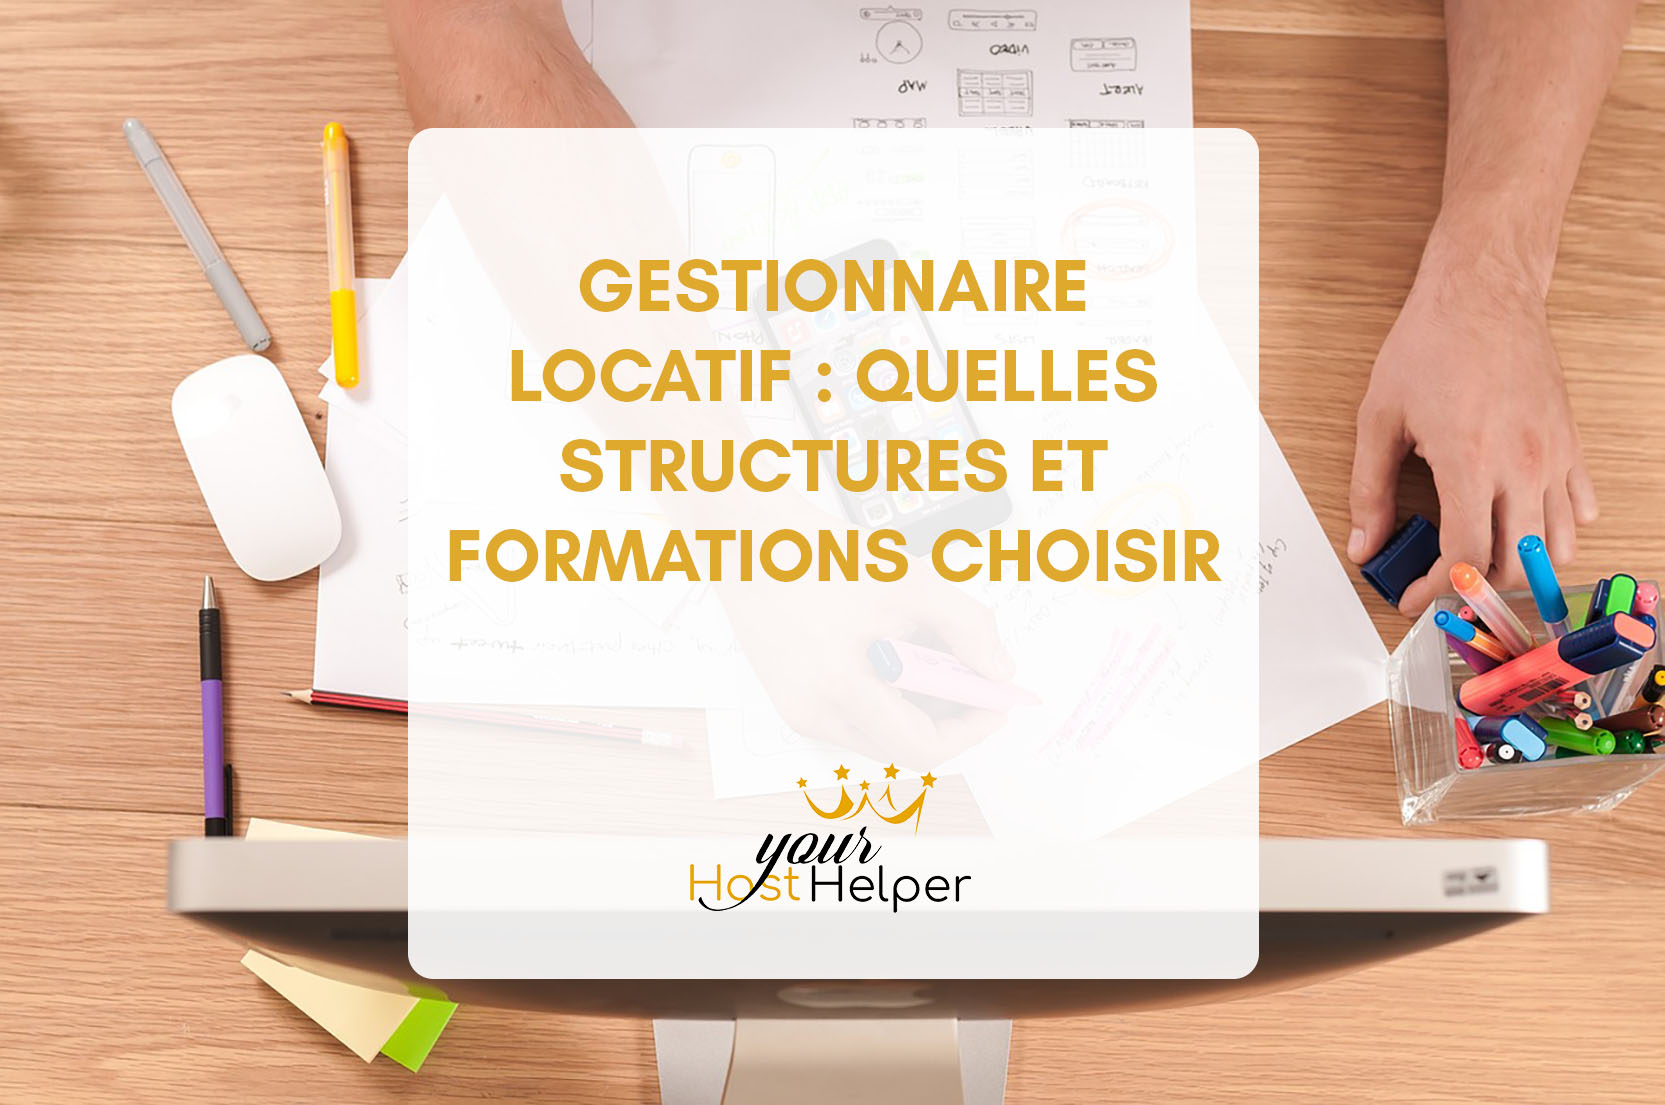 You are currently viewing <strong>Gestionnaire locatif : quelles structures et formations choisir selon notre conciergerie de La Rochelle</strong>